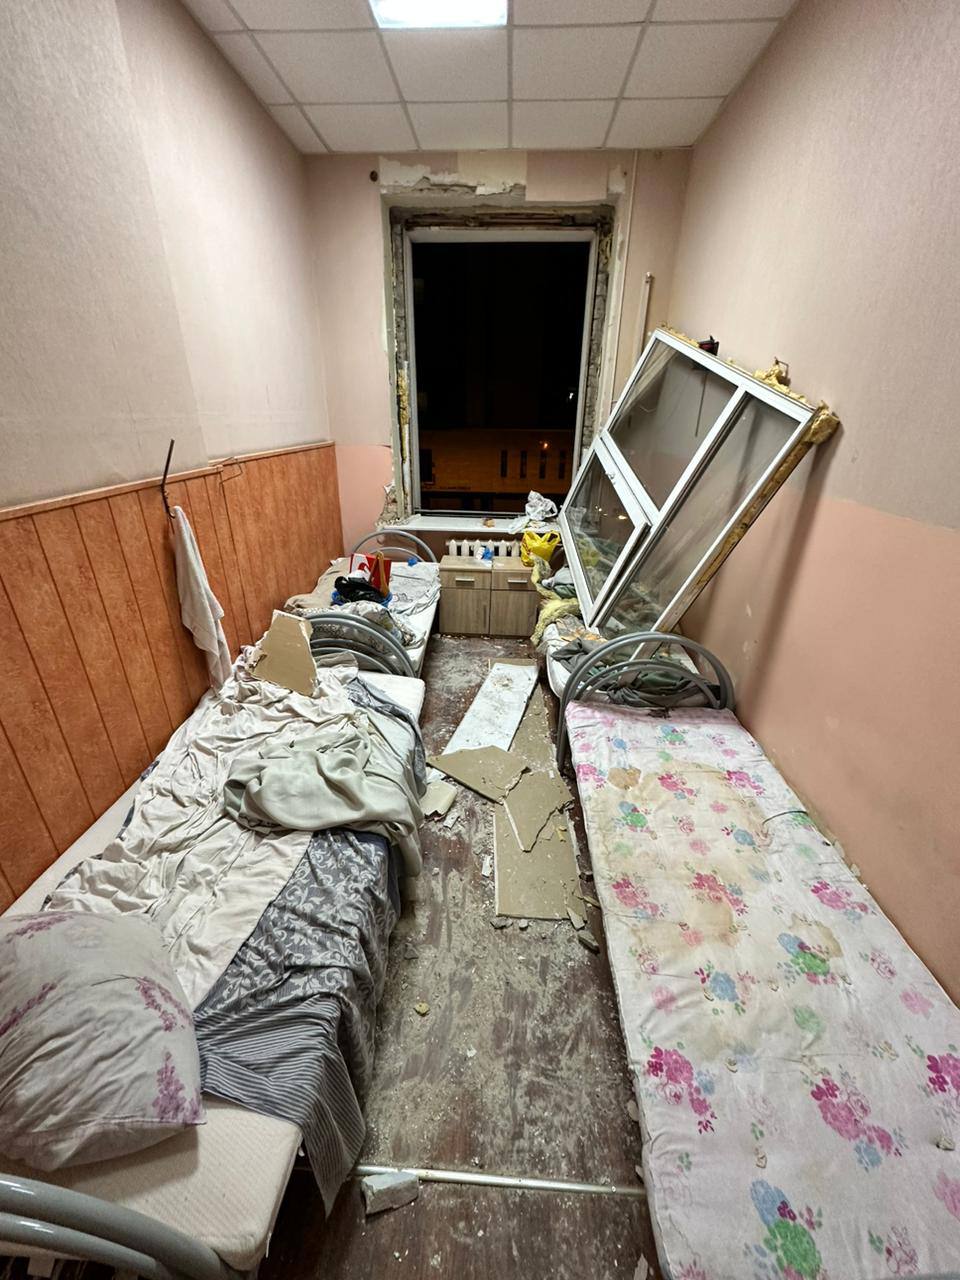 Фото повреждений в медучреждении. Источник - МОЗ Украины